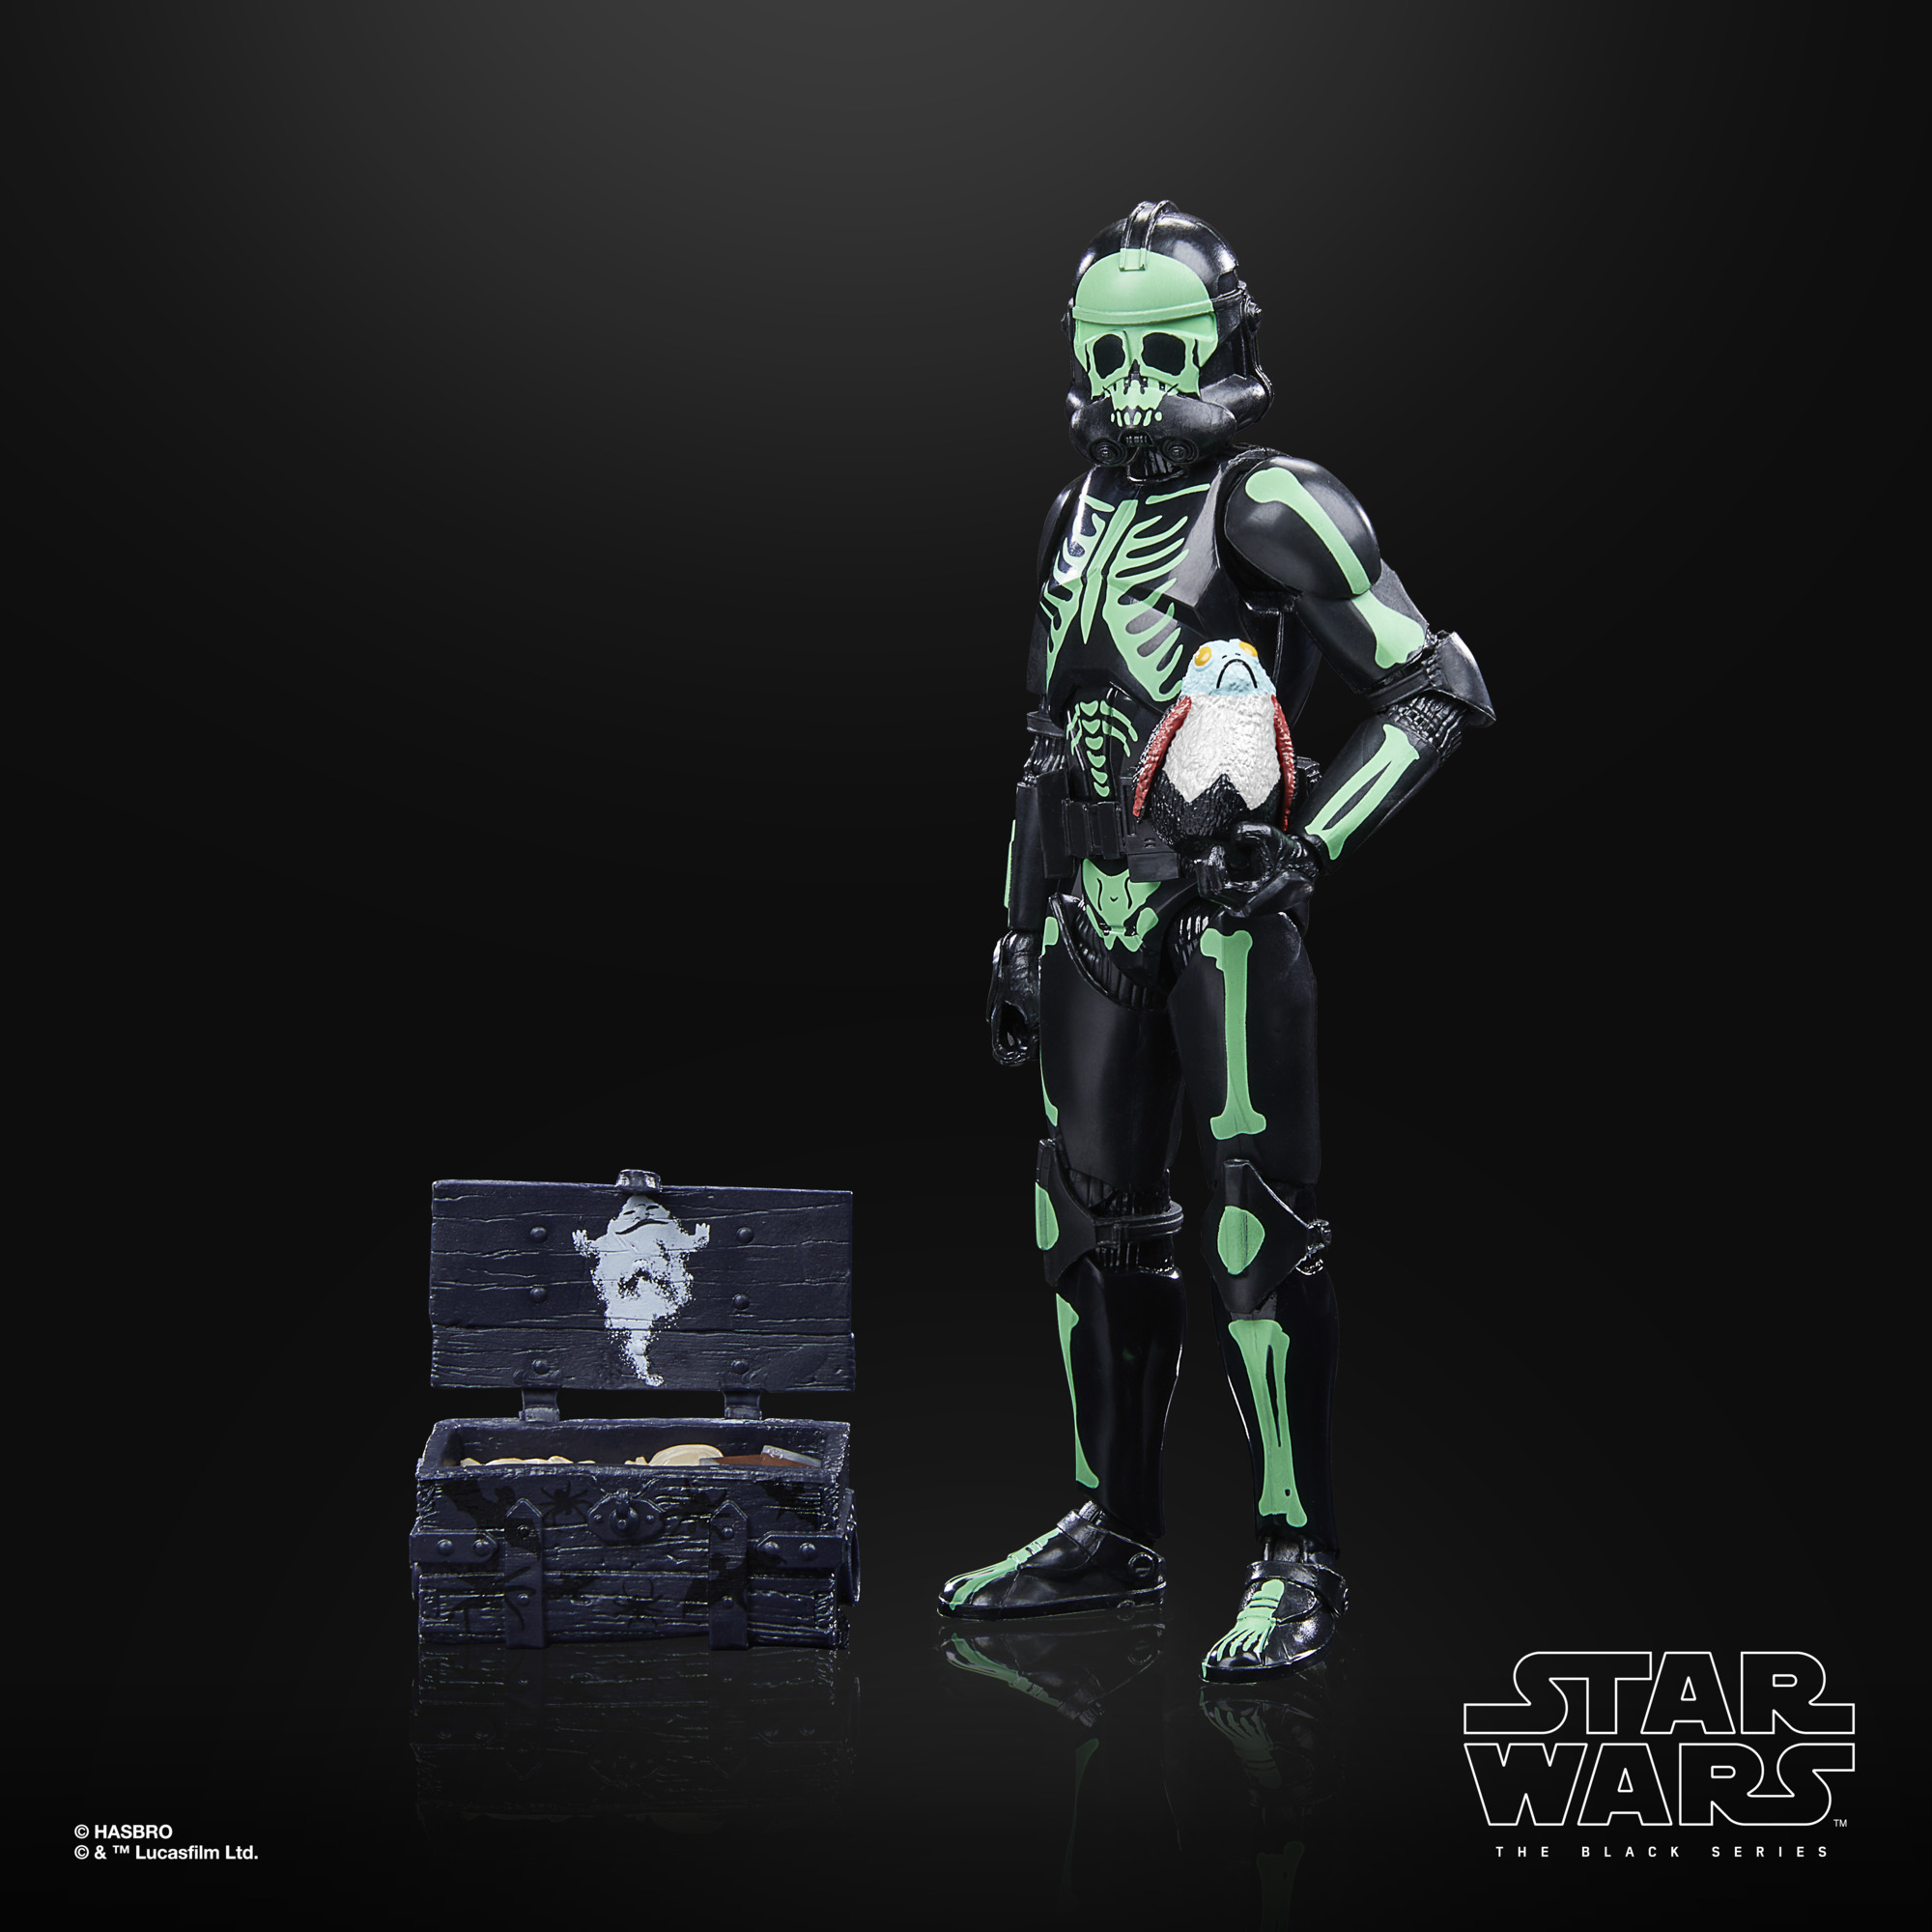 VP leicht beschädigt!!! Star Wars The Black Series Clone Trooper (Halloween Edition) F56085L00 5010994166410